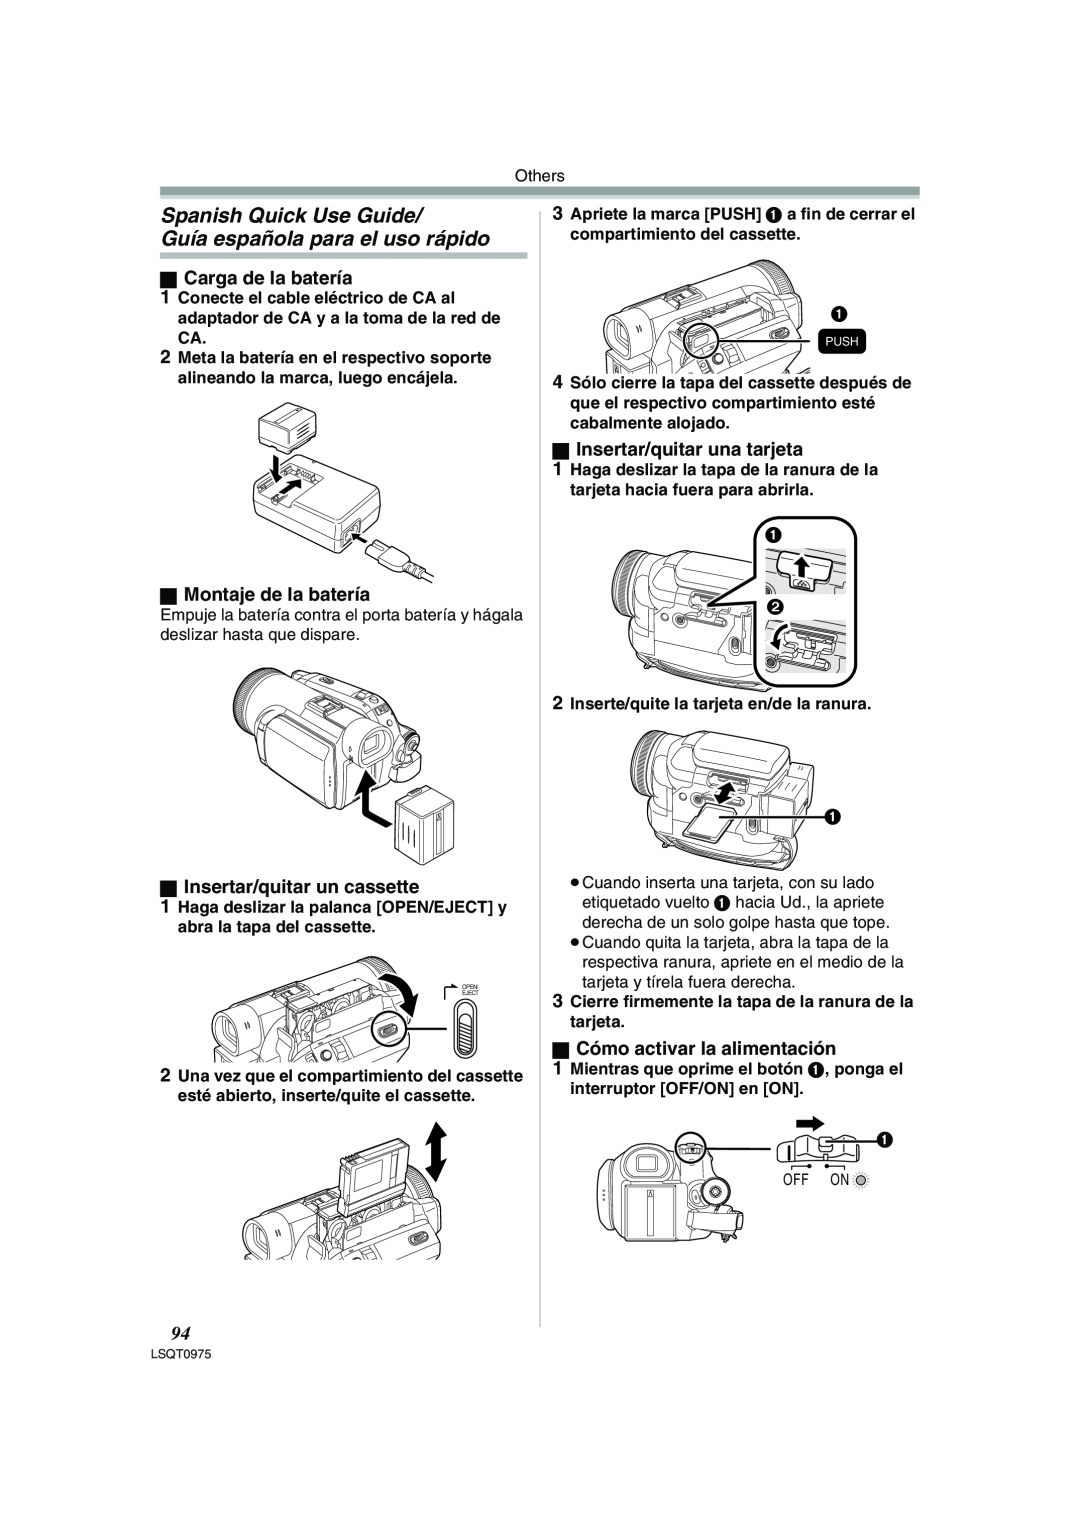 Panasonic PV-GS500 operating instructions Spanish Quick Use Guide Guía española para el uso rápido, ª Carga de la batería 